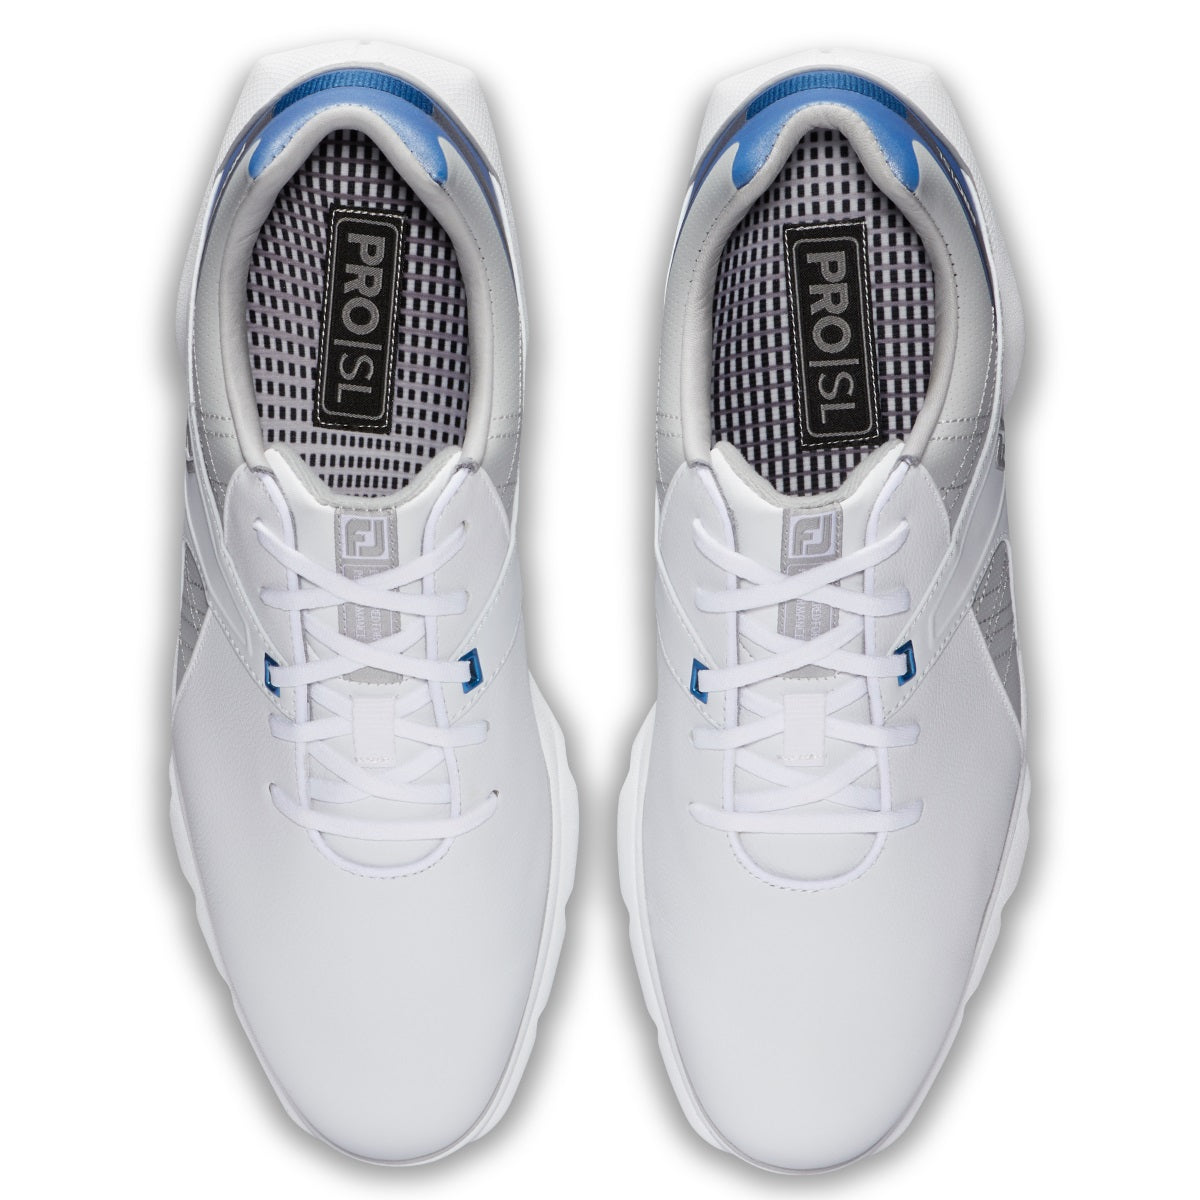 FootJoy Pro SL Men's White/Blue/Grey Golf Shoes - Previous Season Styl ...